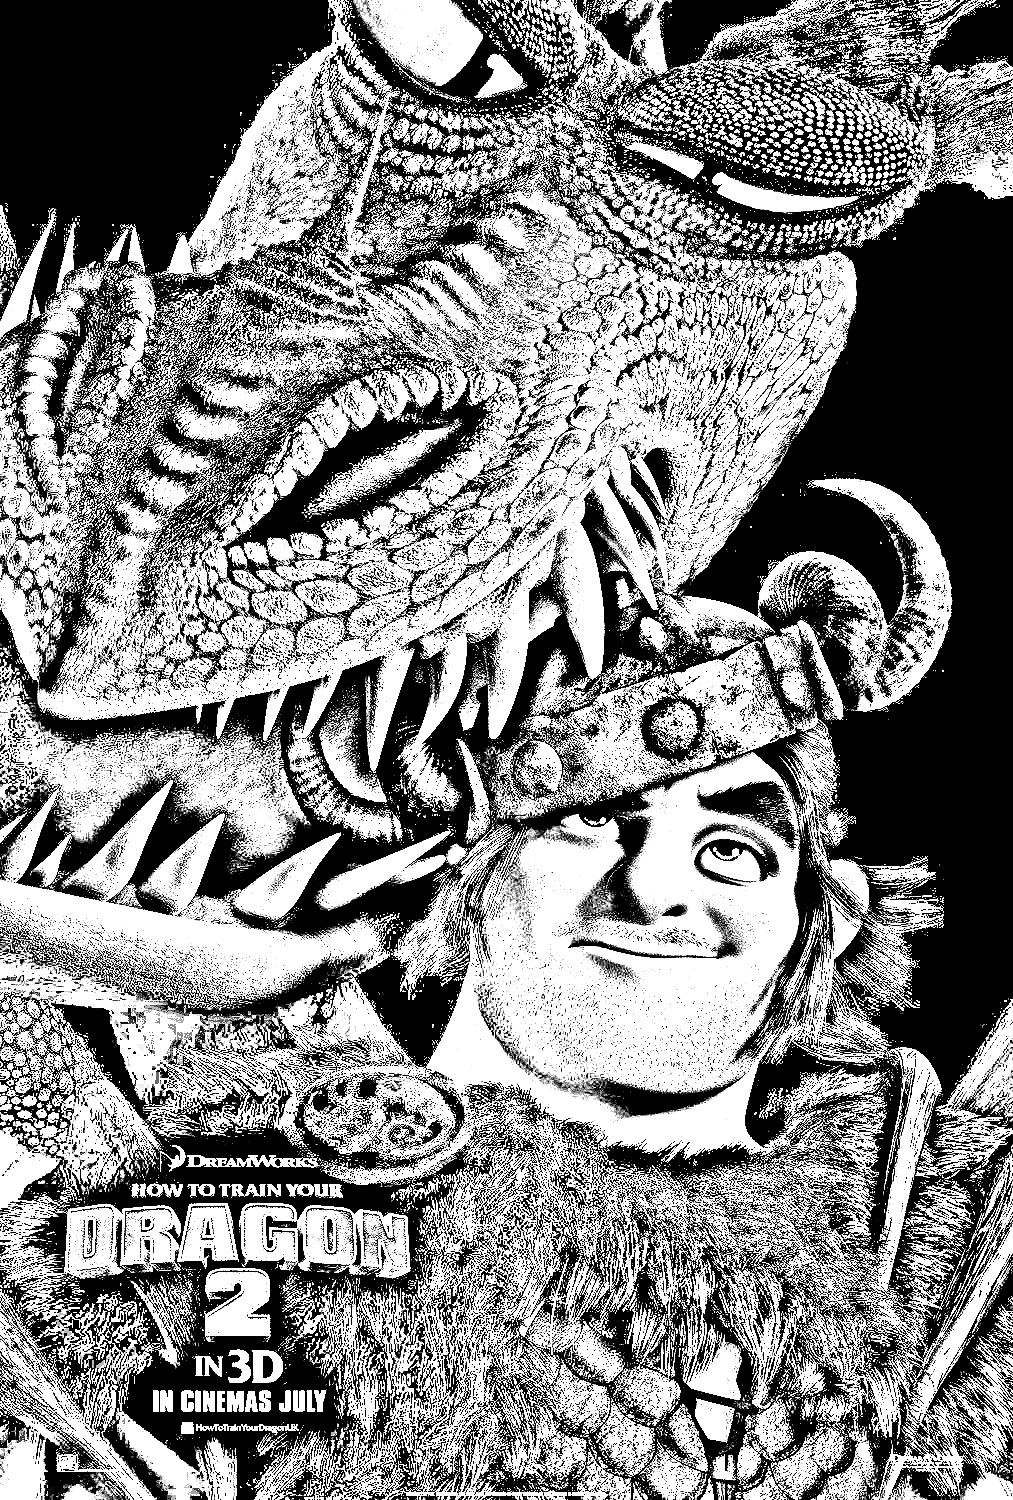 Affiche du film Dragon 2 avec un des personnages et son ami ailé